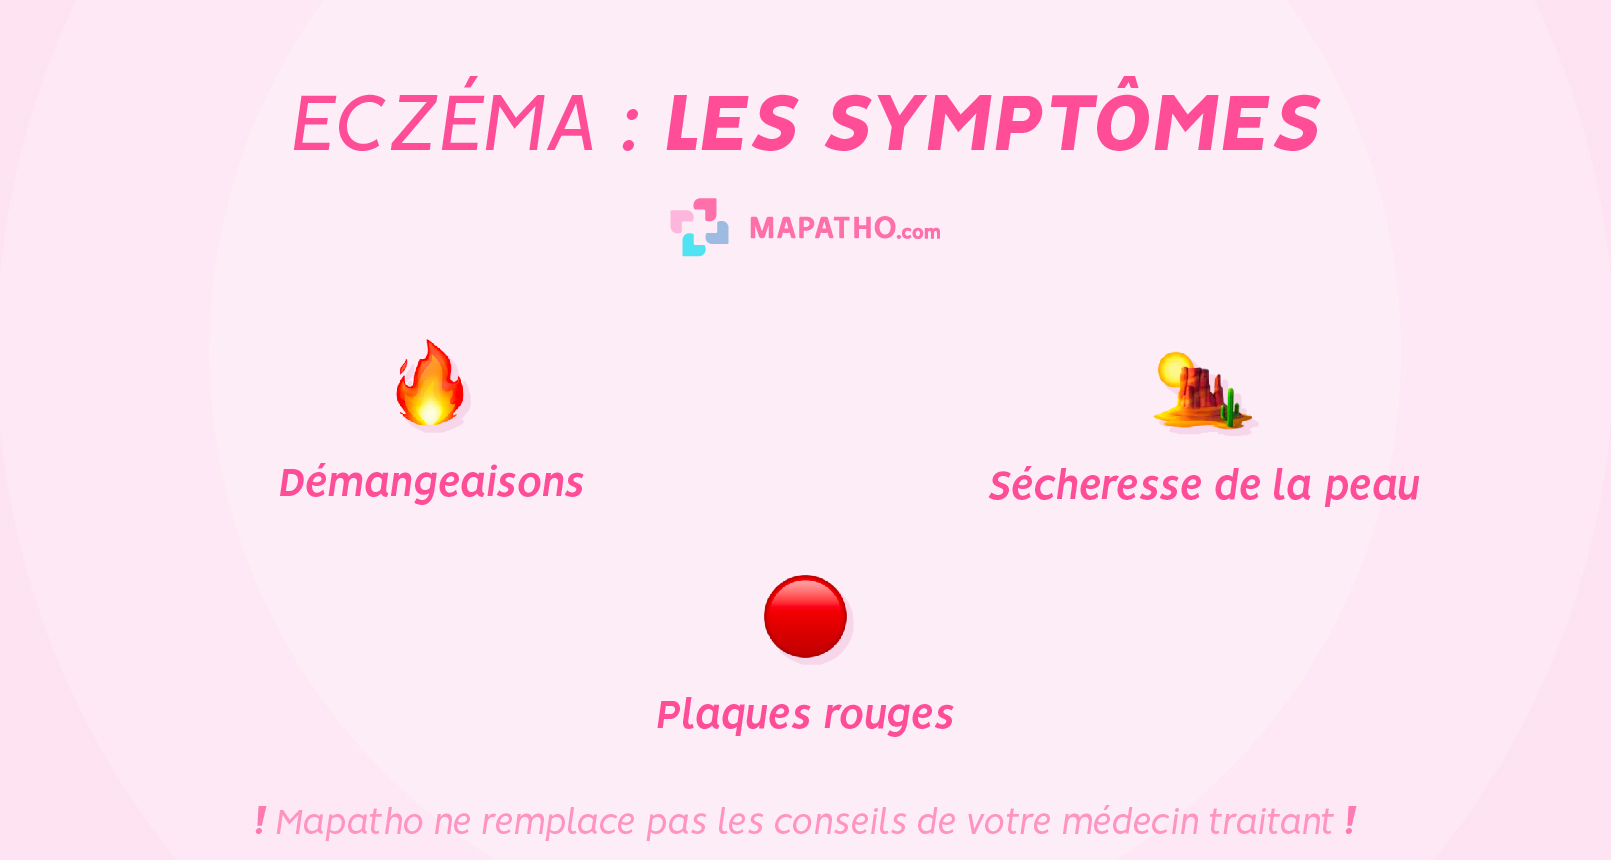 Les symptomes de l'eczema